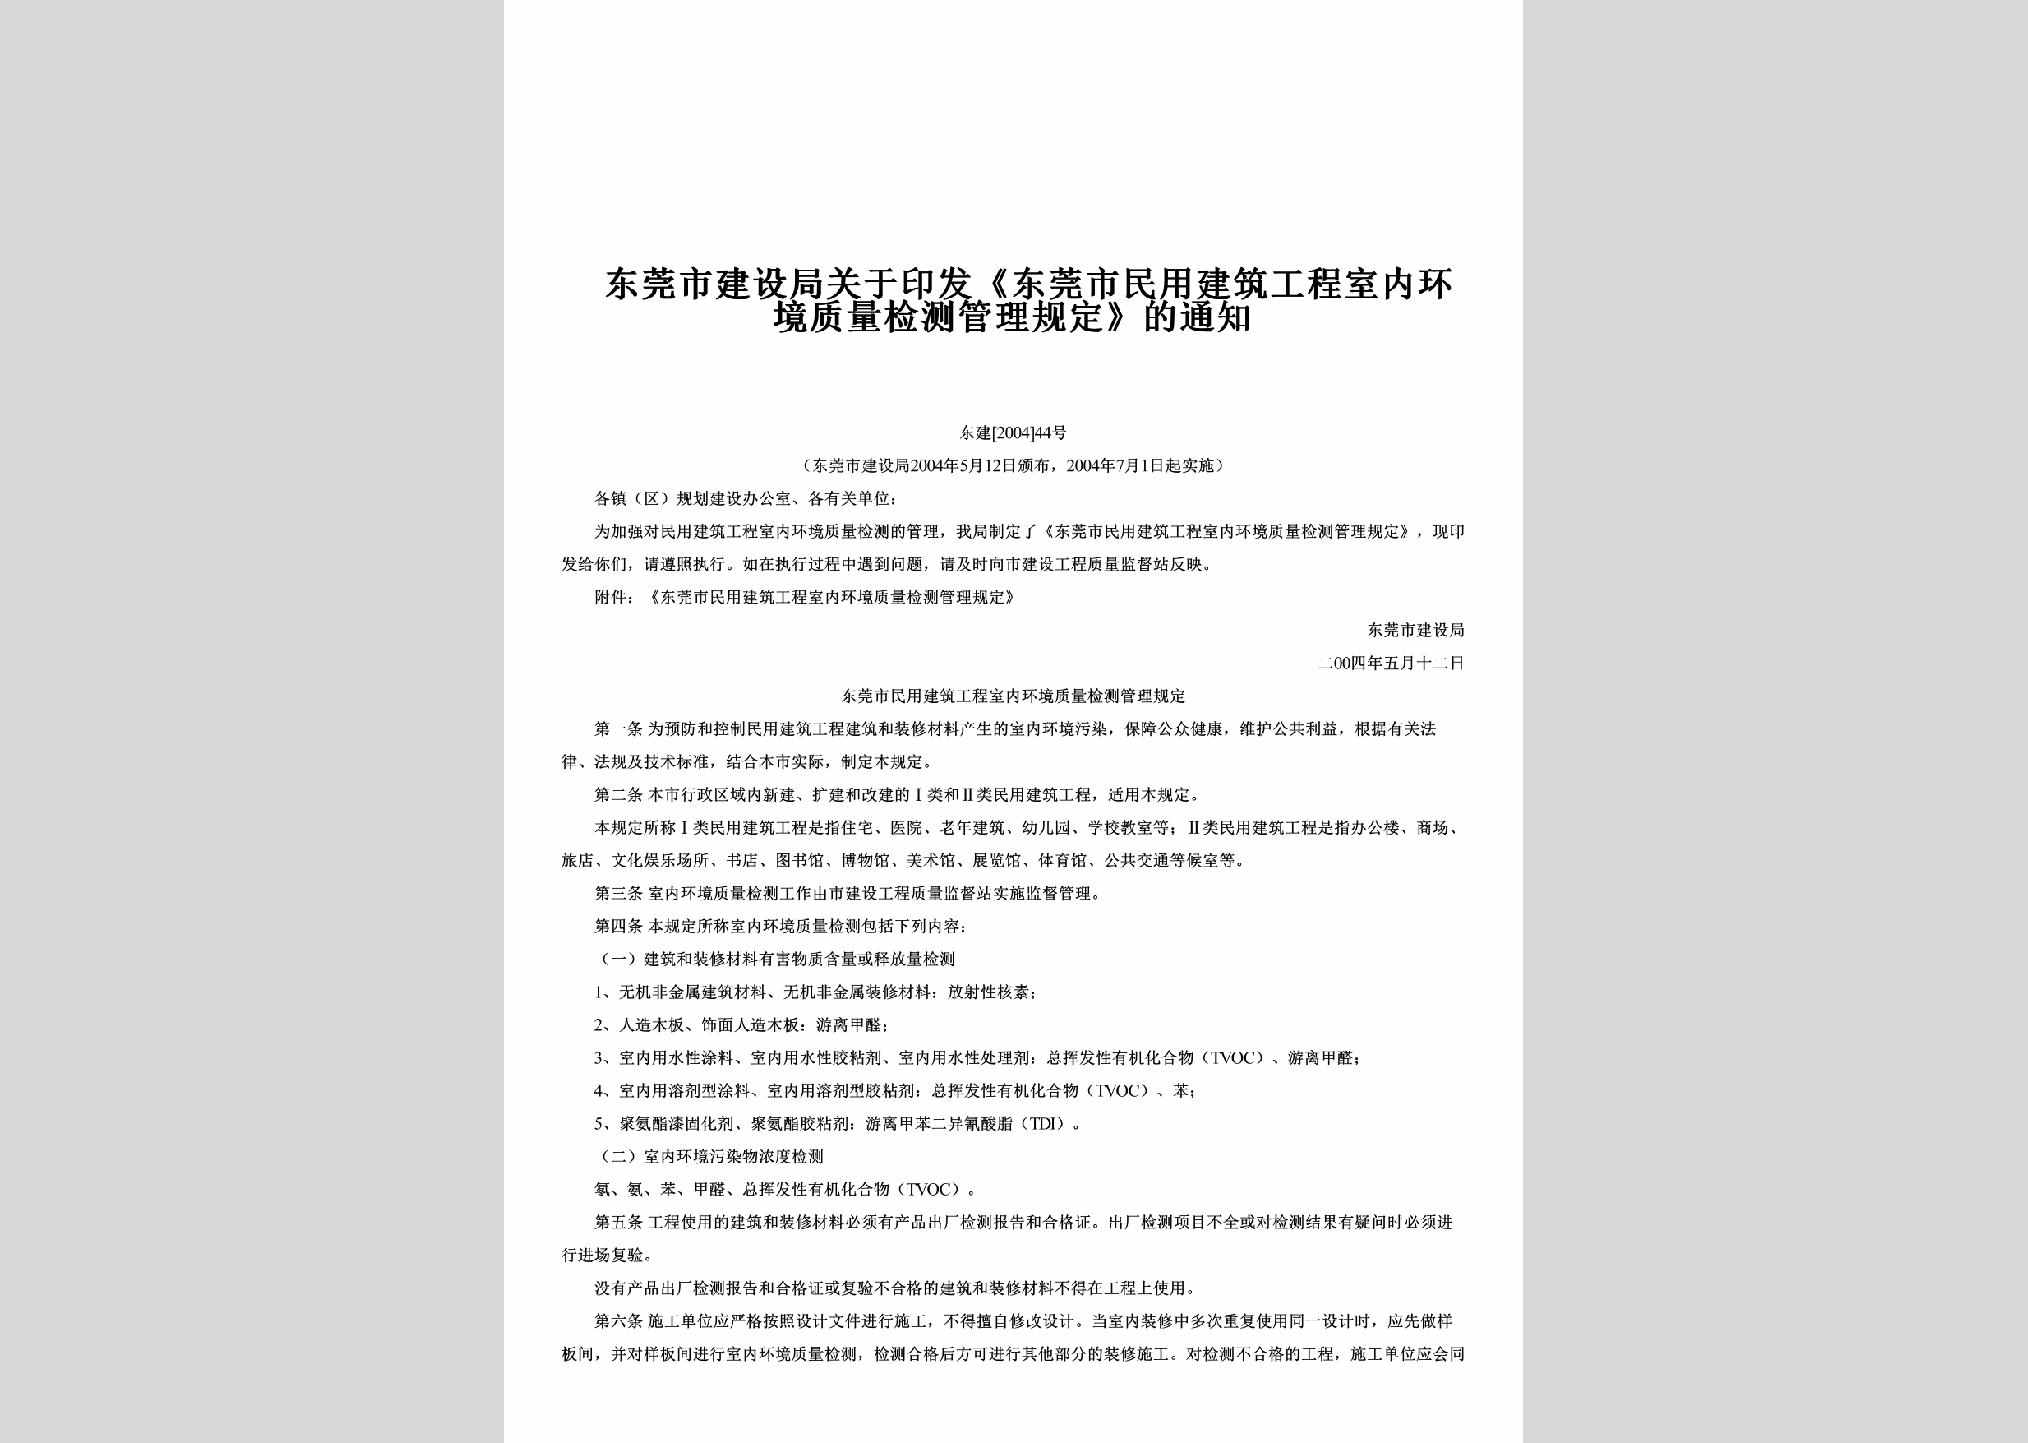 东建[2004]44号：关于印发《东莞市民用建筑工程室内环境质量检测管理规定》的通知